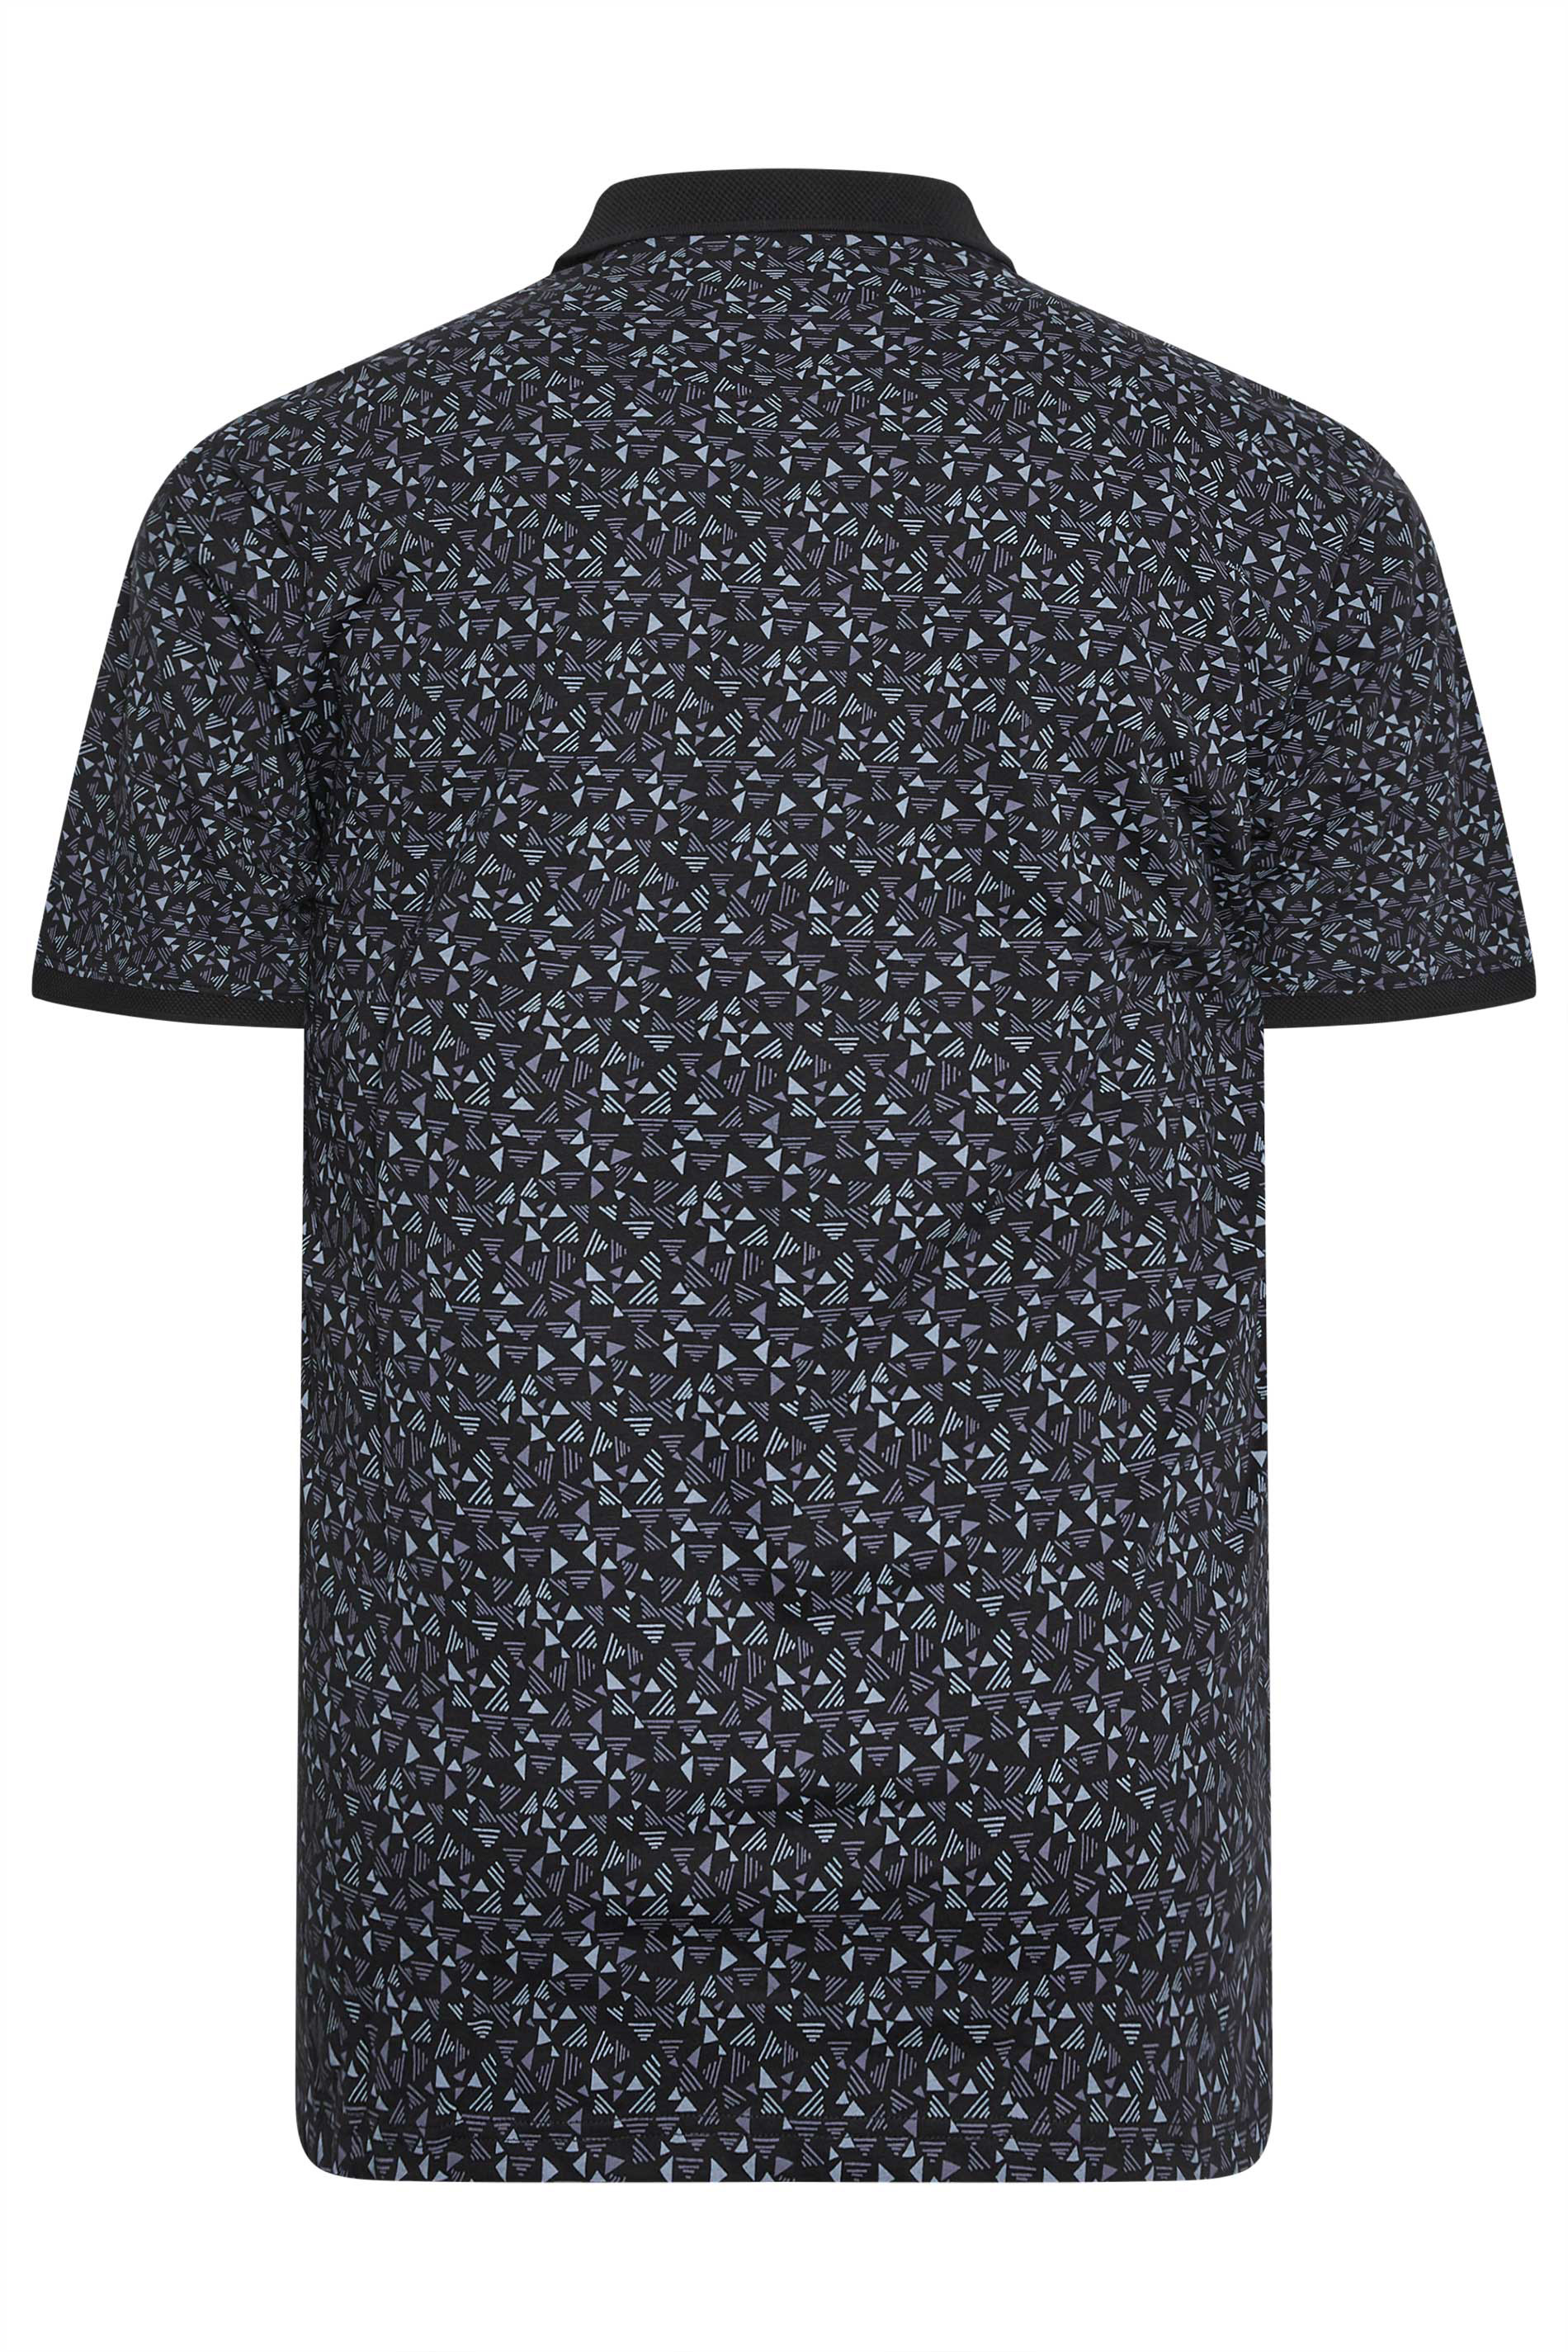 KAM Big & Tall Black Arrow Head Print Polo Shirt | BadRhino 2